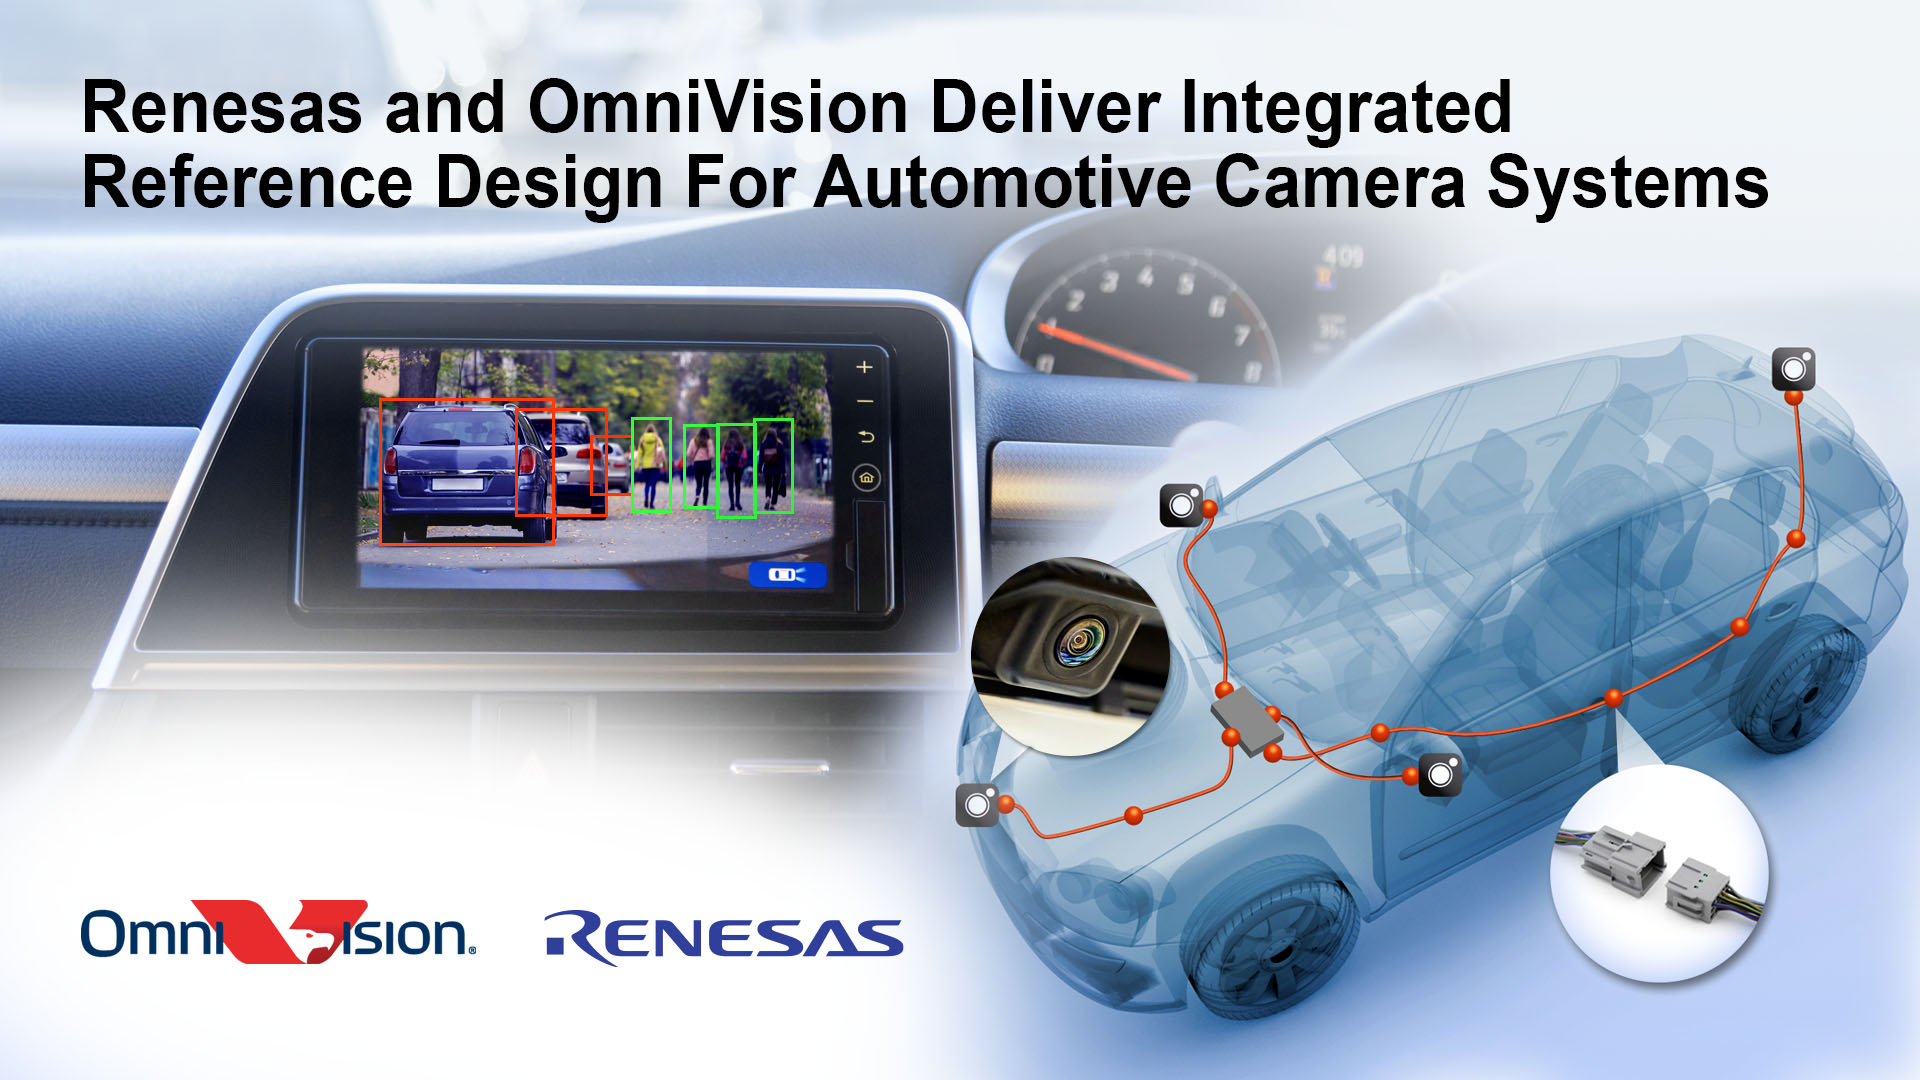 “瑞萨电子和豪威科技为汽车摄像头系统提供集成参考设计"